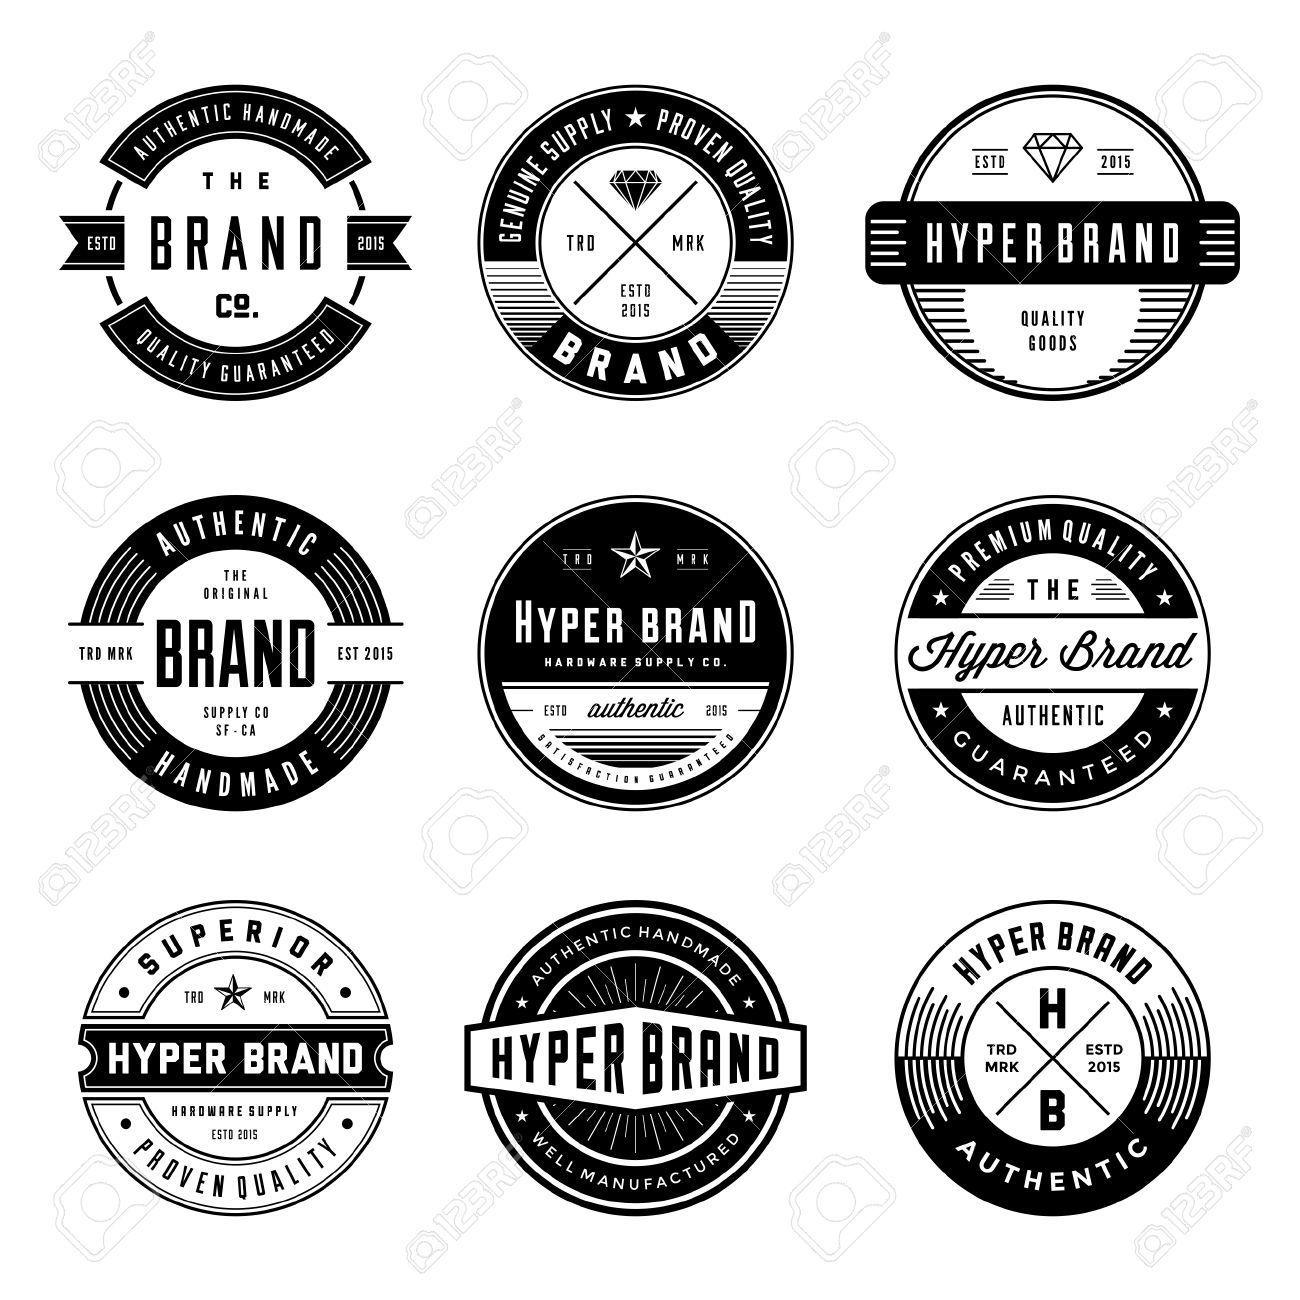 BRE Logo - Pin by Bre Clare on tee design. | Badge design, Circular logo, Logos